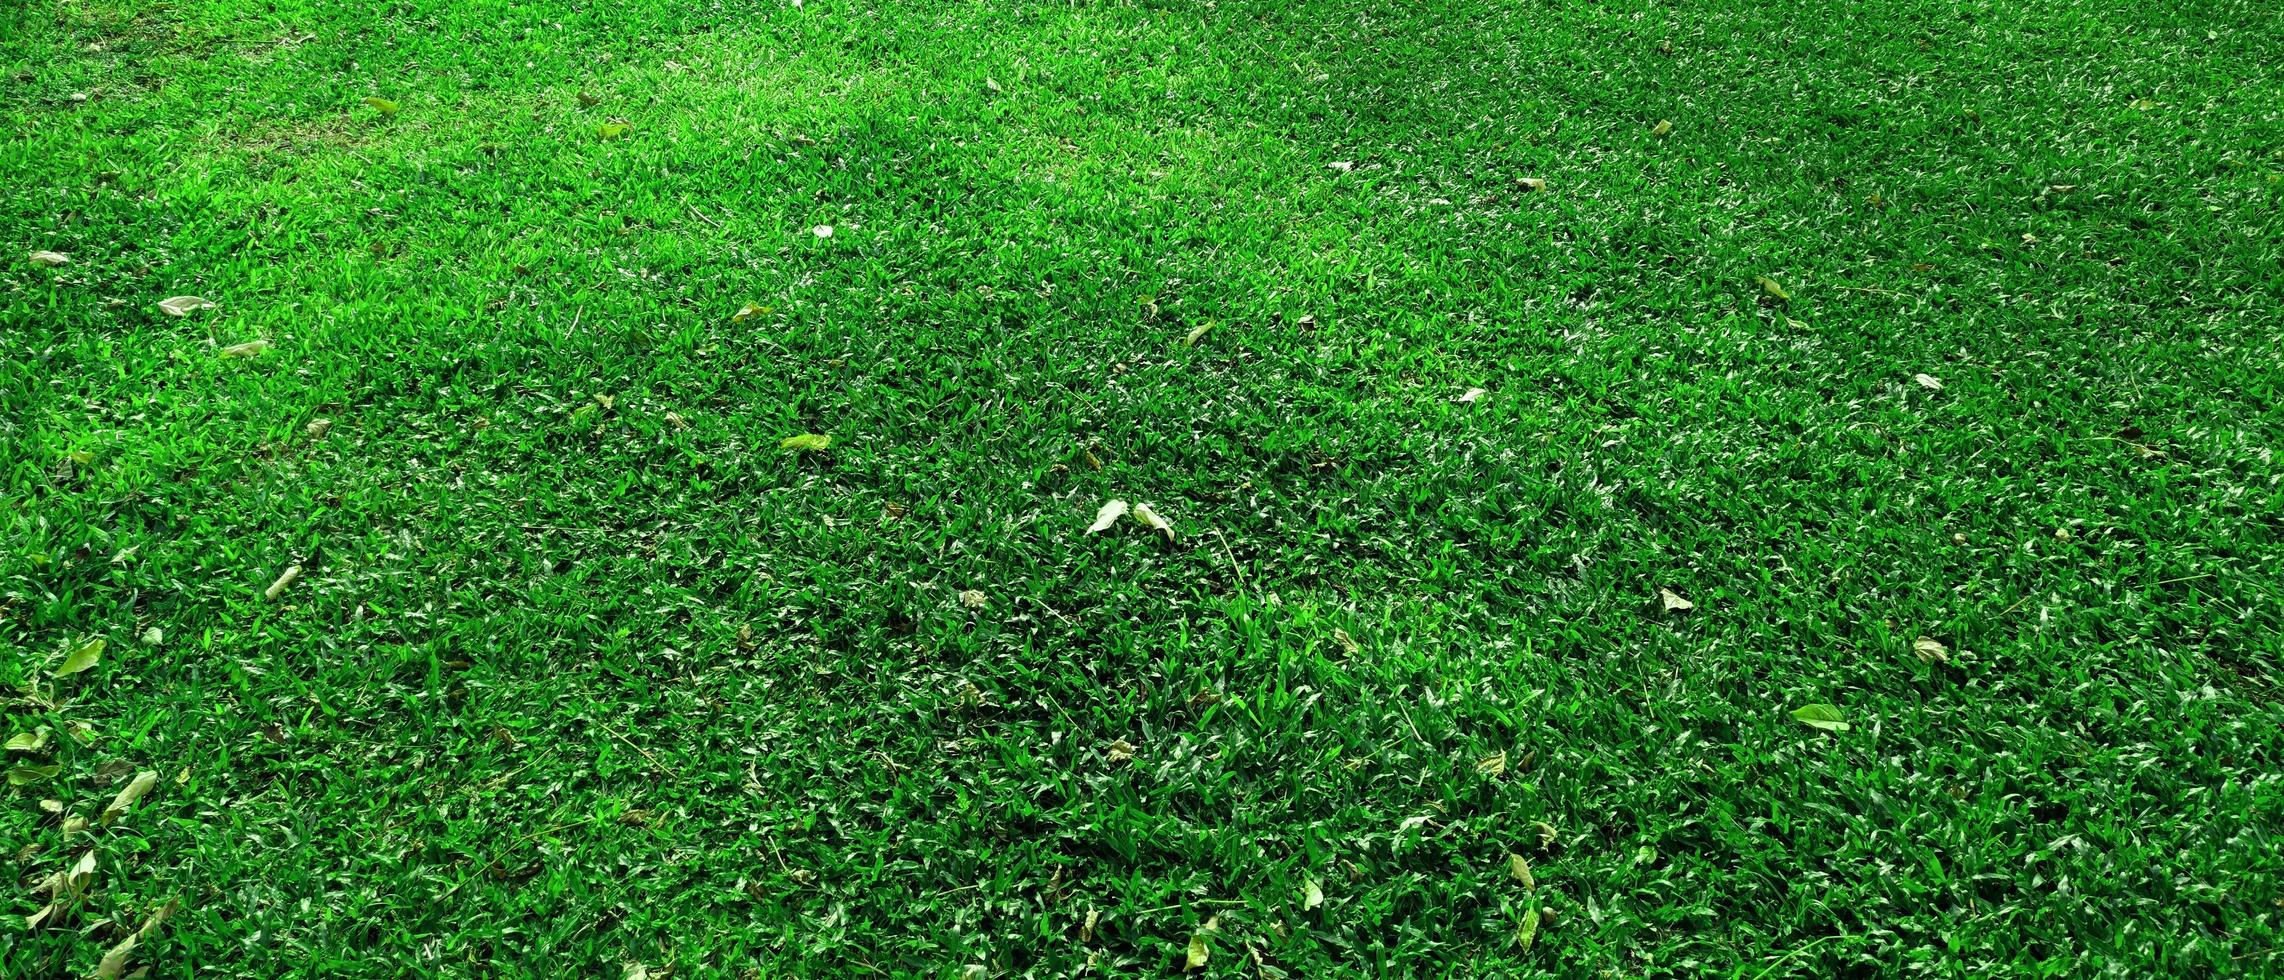 groene gras textuur achtergrond in het park foto